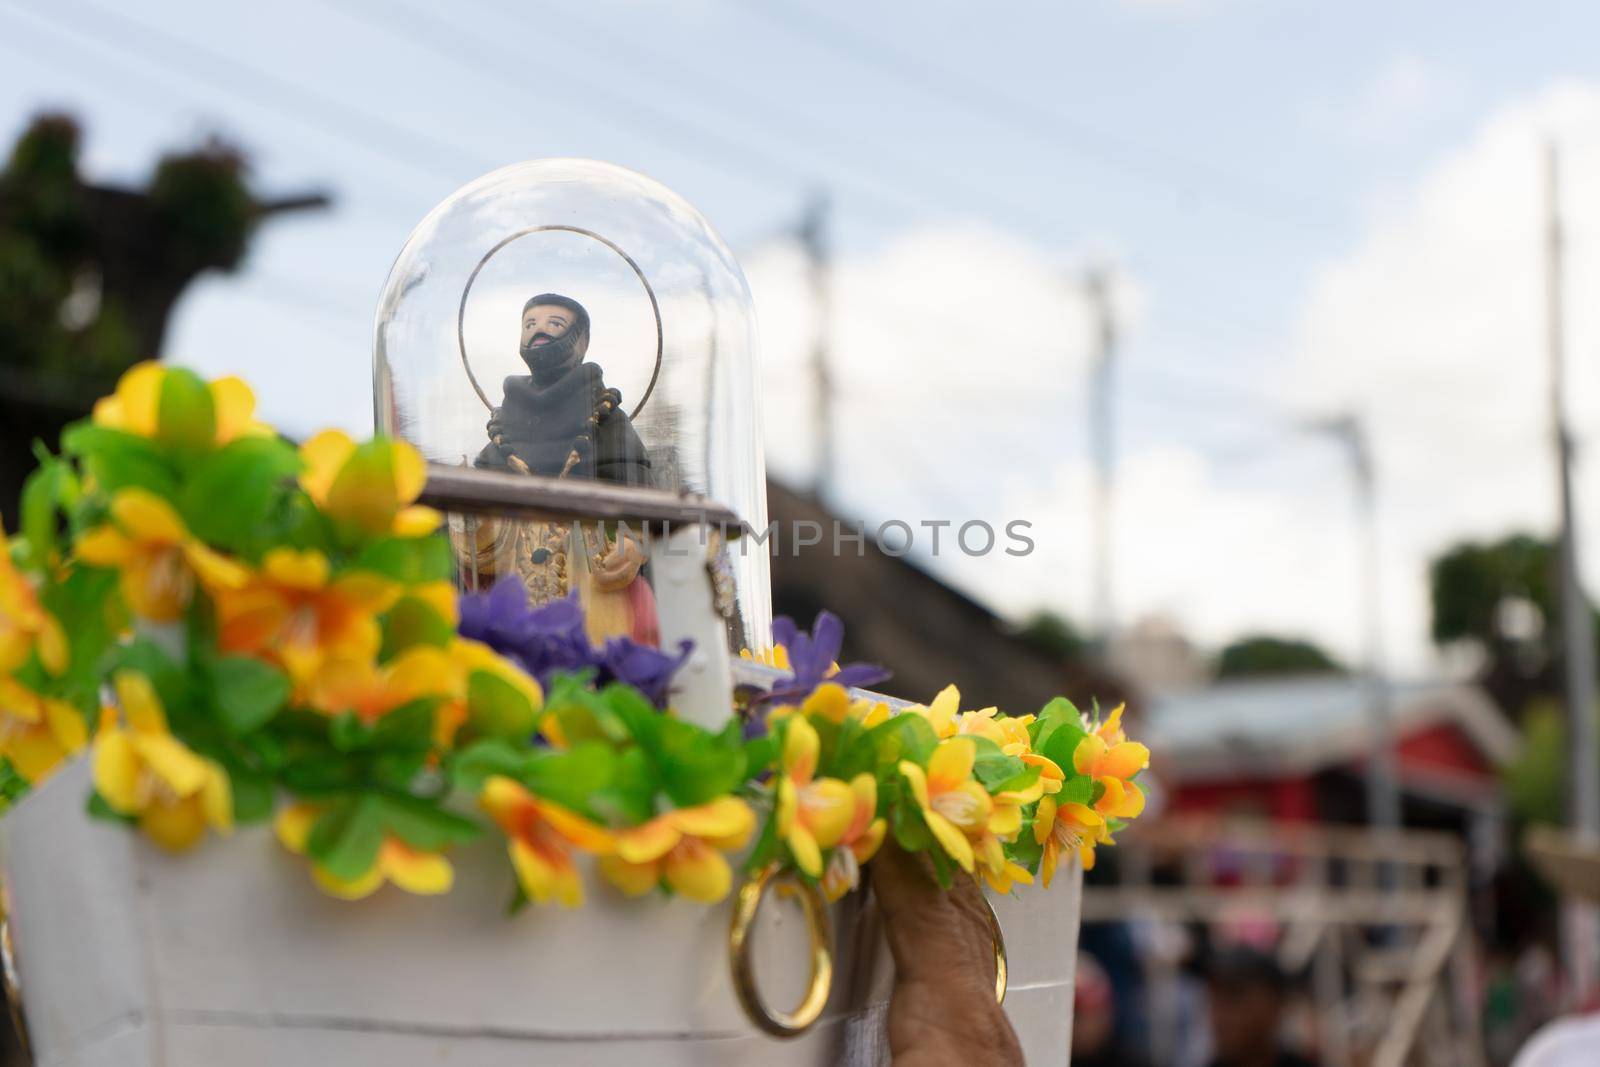 Image of Santo Domingo de Guzman in miniature traveling in a small boat in the Managua festivities by cfalvarez